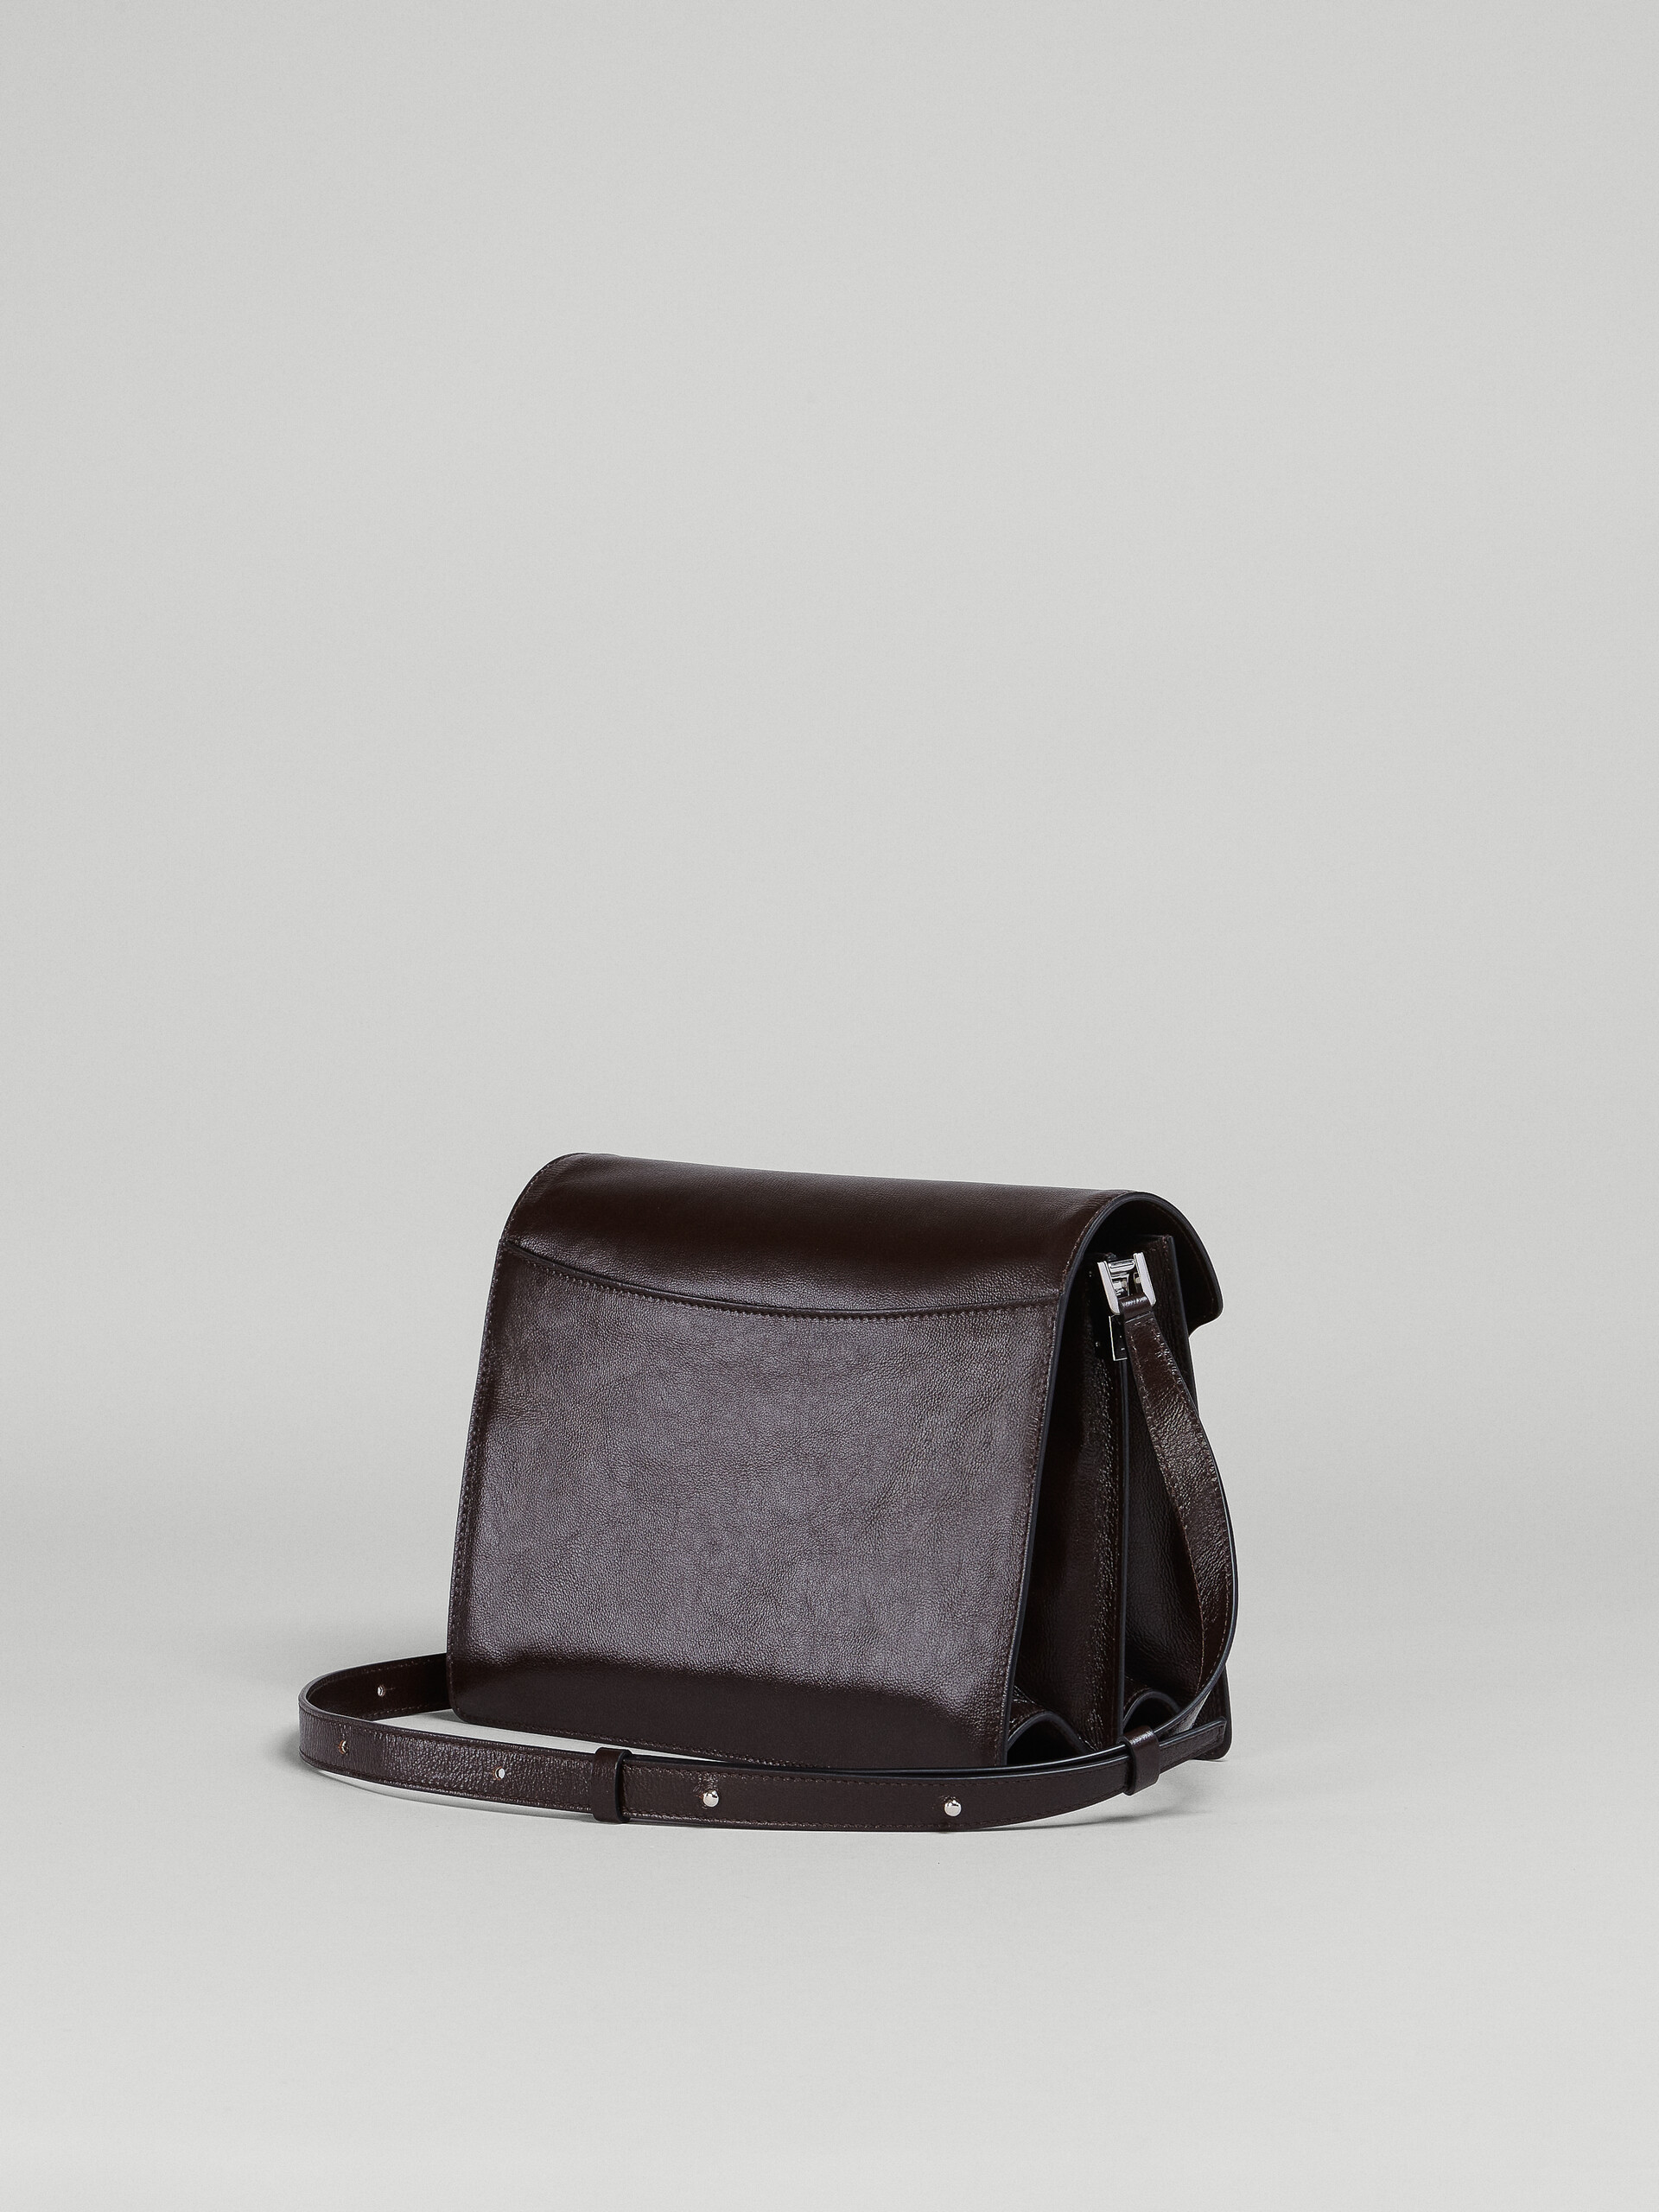 TRUNK SOFT large bag in brown leather - Shoulder Bag - Image 2